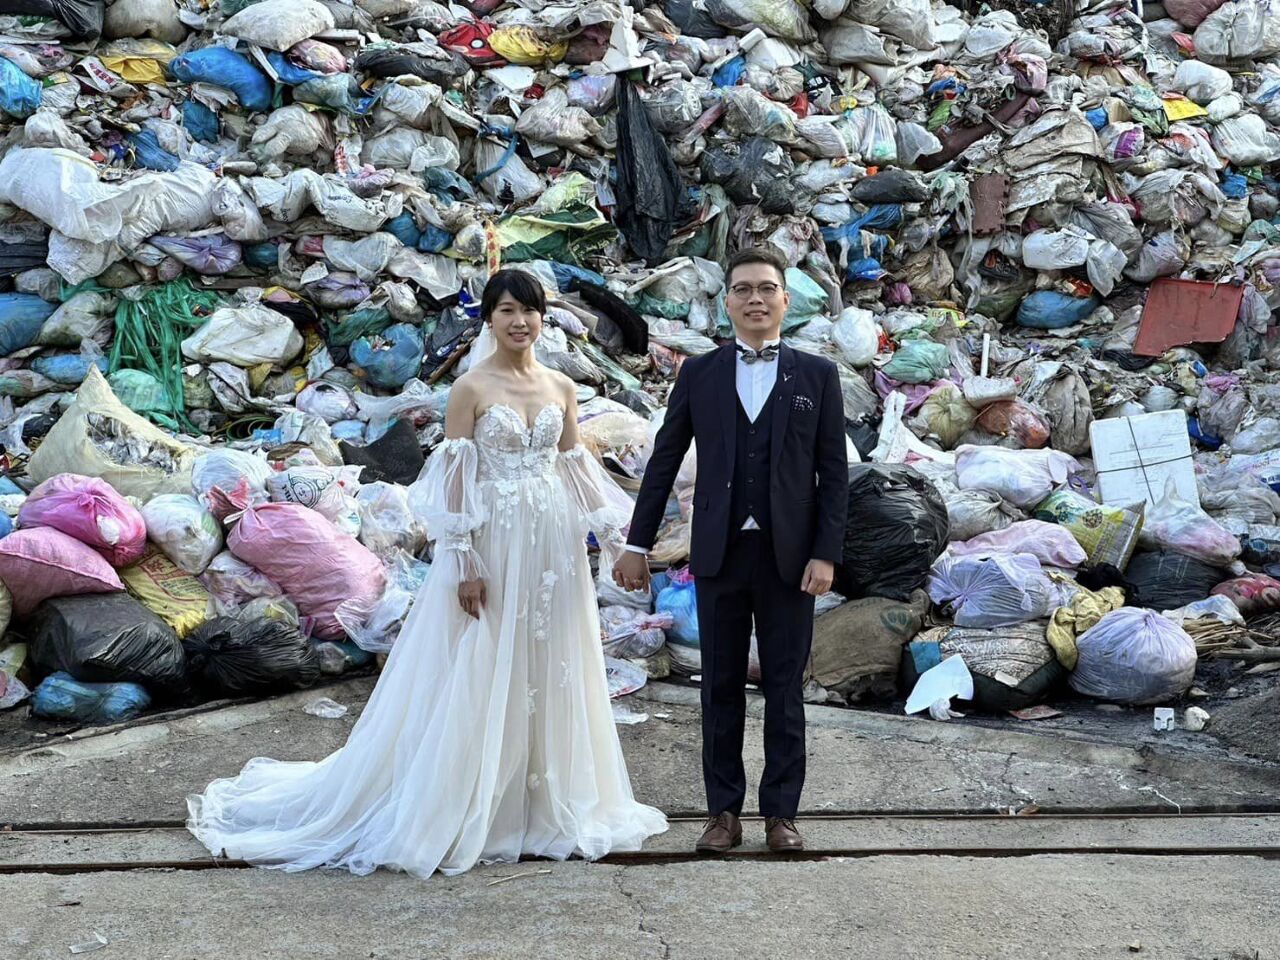 用行動愛環保 台灣新人垃圾山拍婚照紅到國外